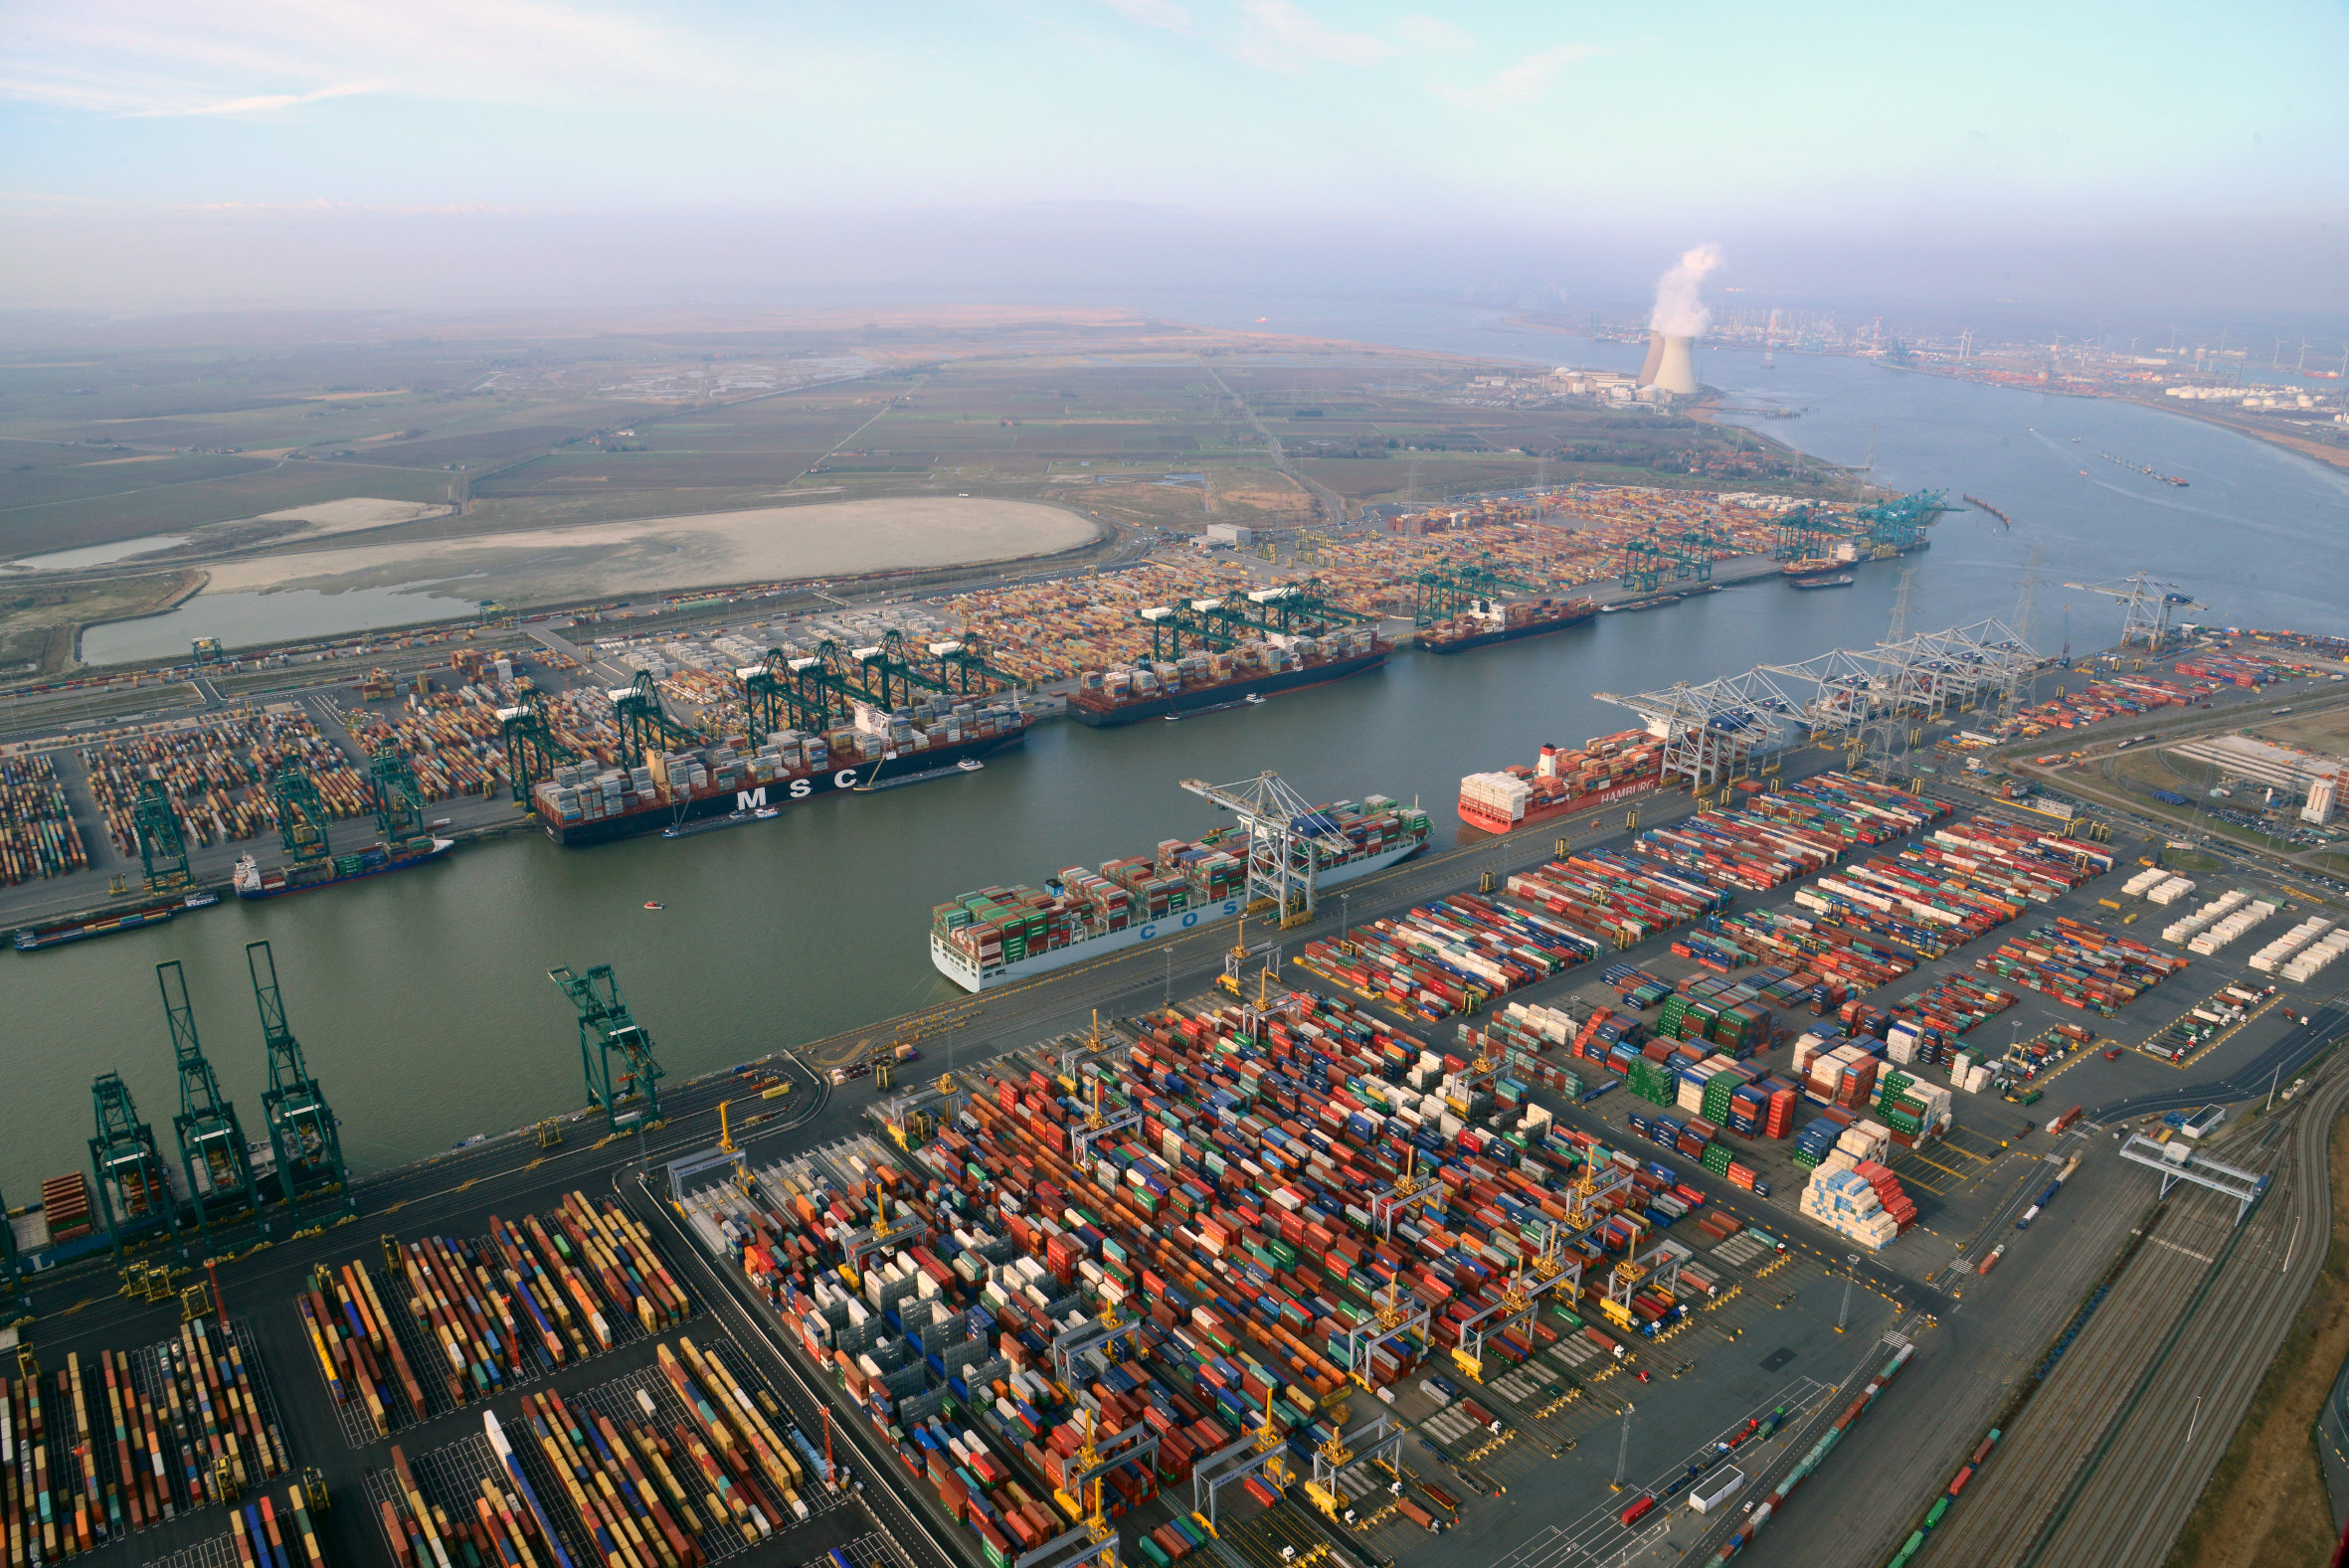 Hafen Antwerpen erreicht 2018 die Marke von 11 Mio. TEU